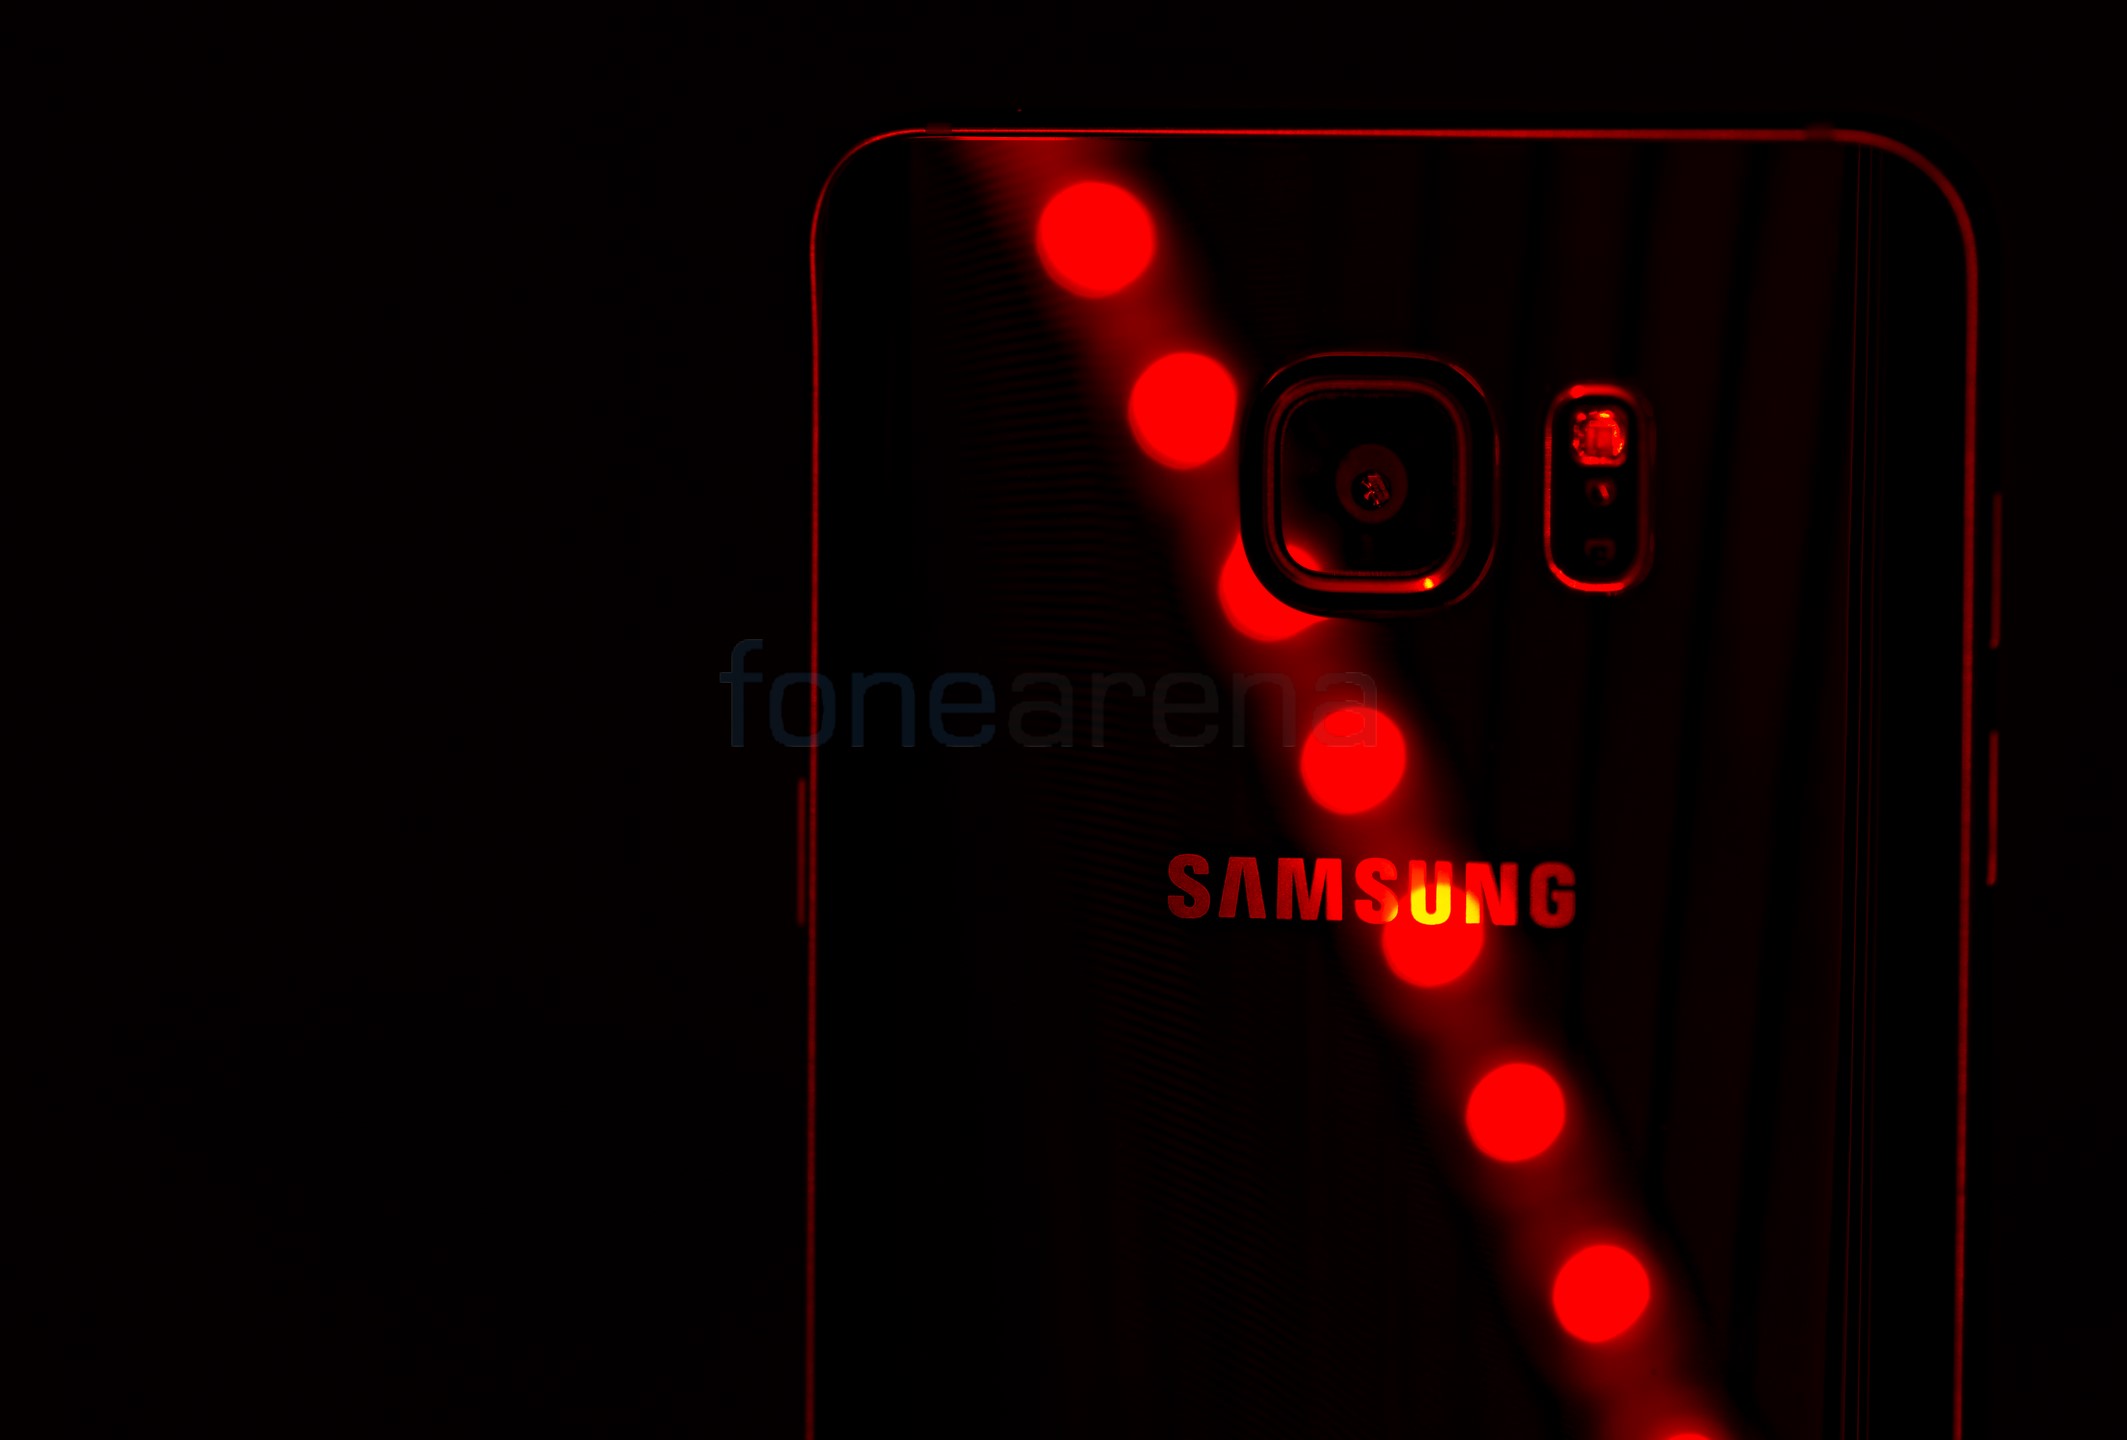 Samsung Galaxy Note5 Camera Samples